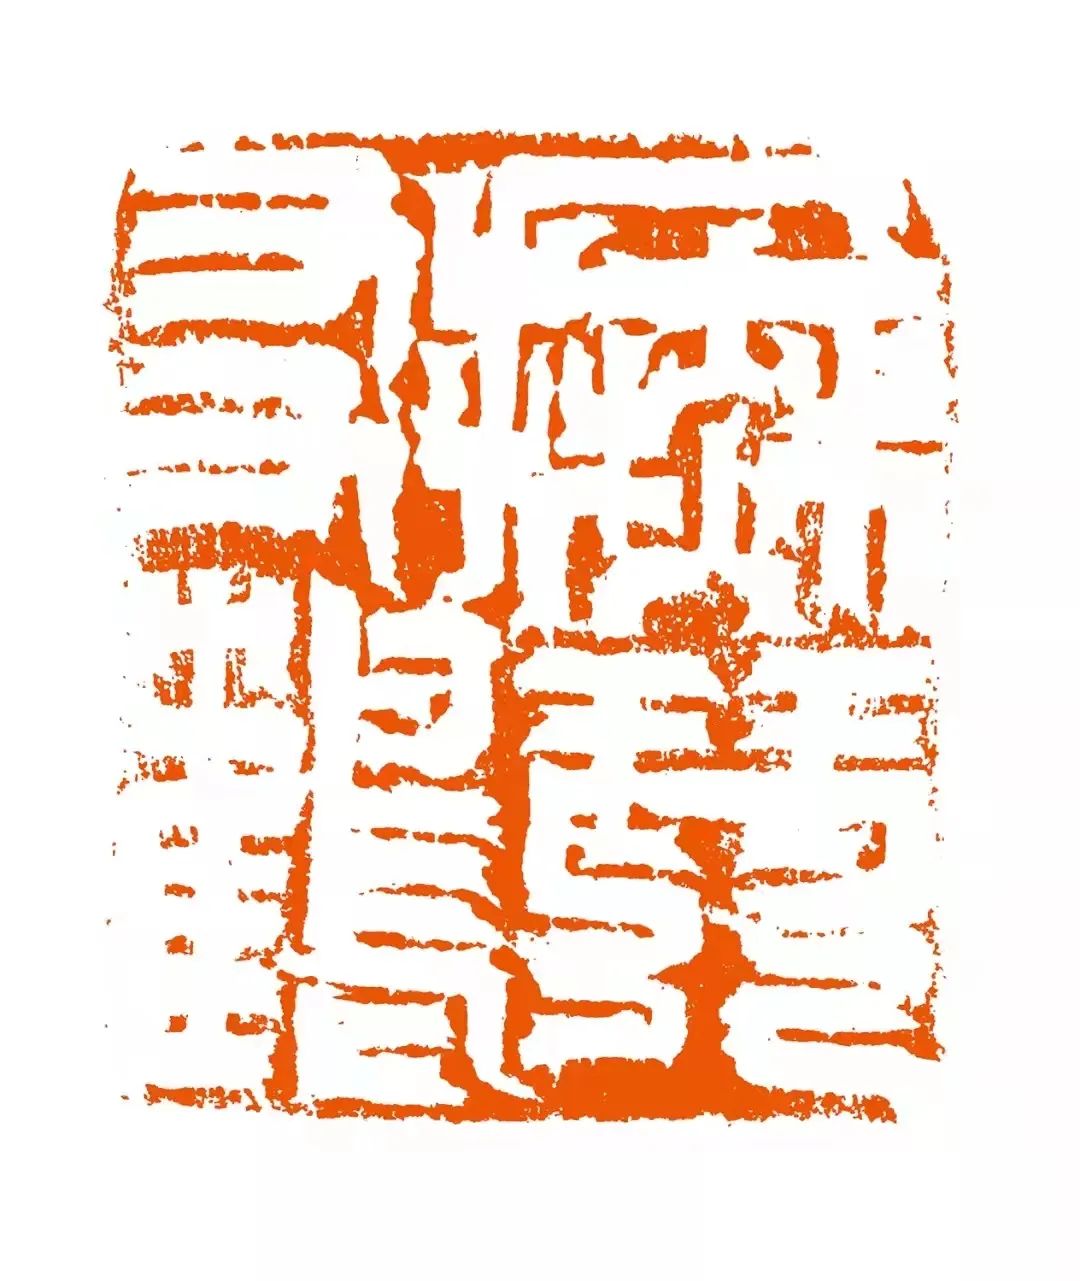 刀法新境和谱系架构——著名艺术家魏广君对当代篆刻艺术发展的可能性探讨